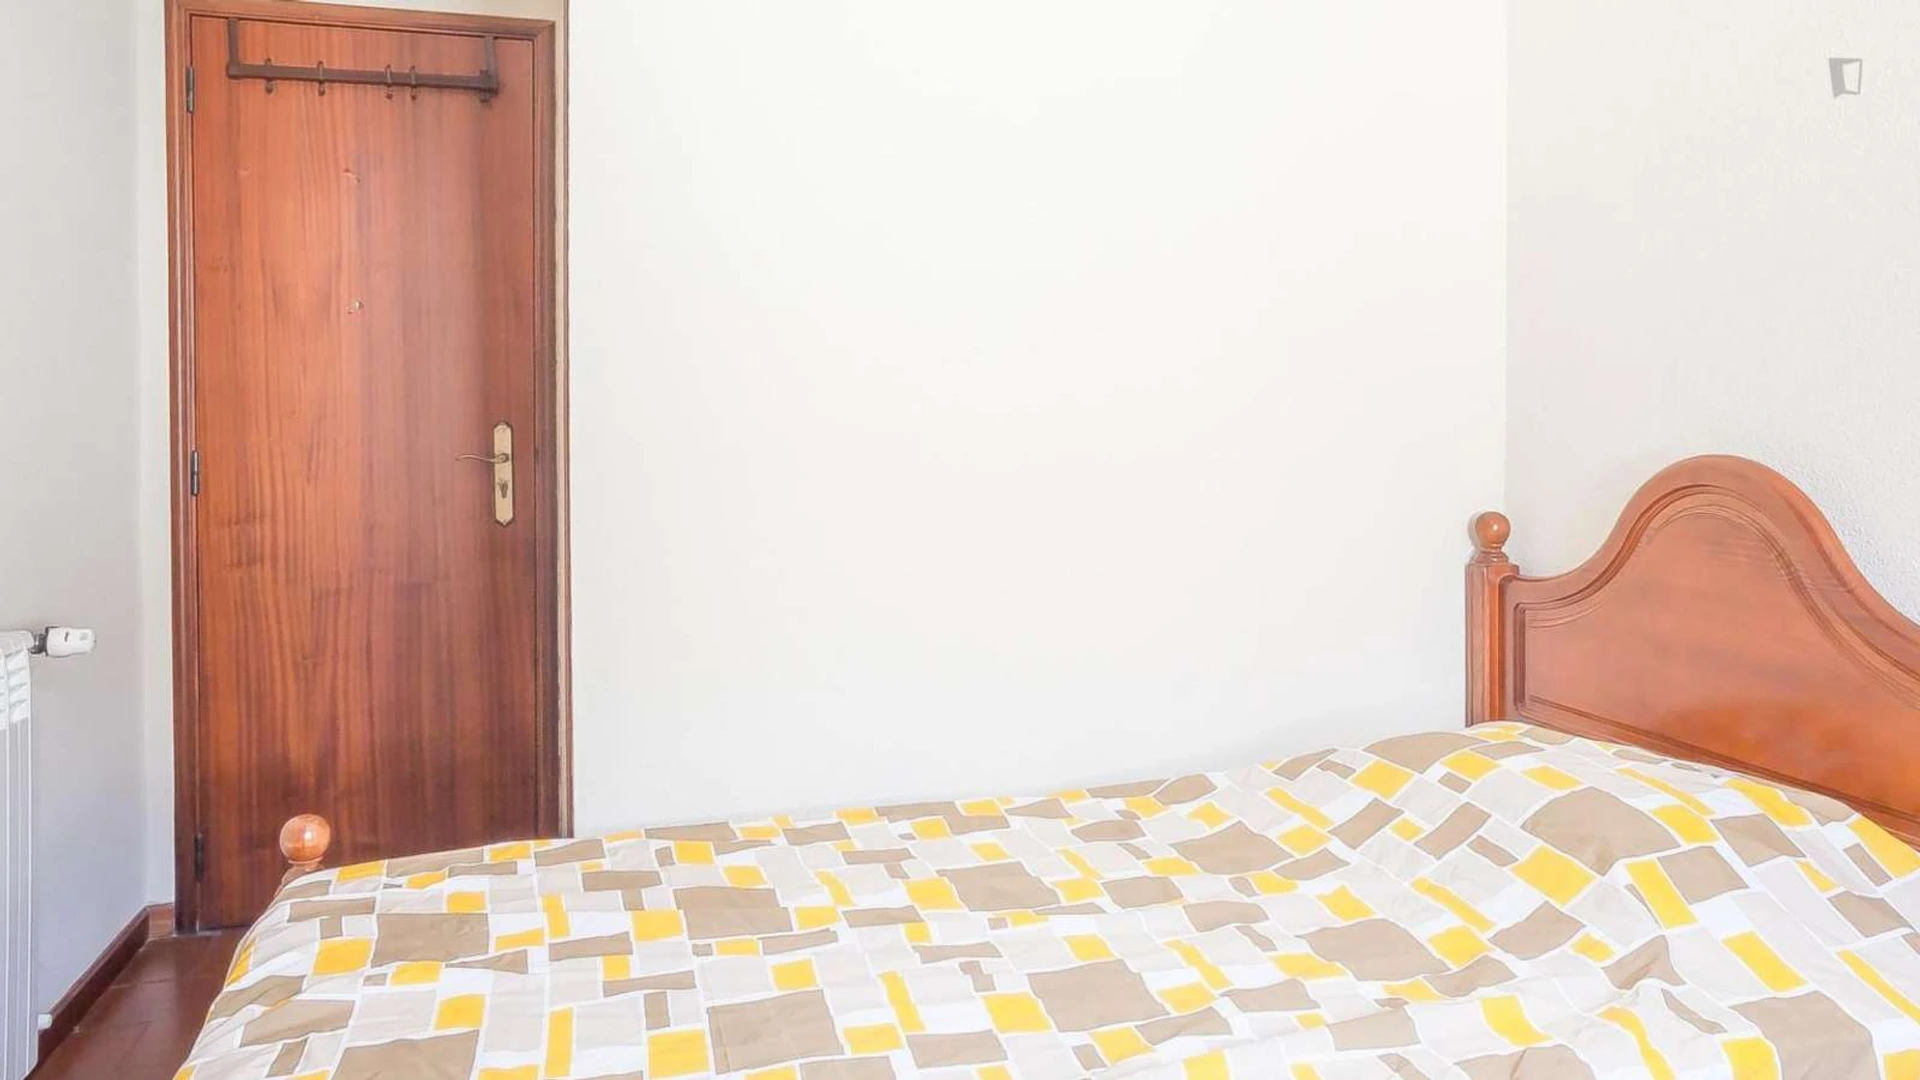 Chambre à louer avec lit double Coimbra